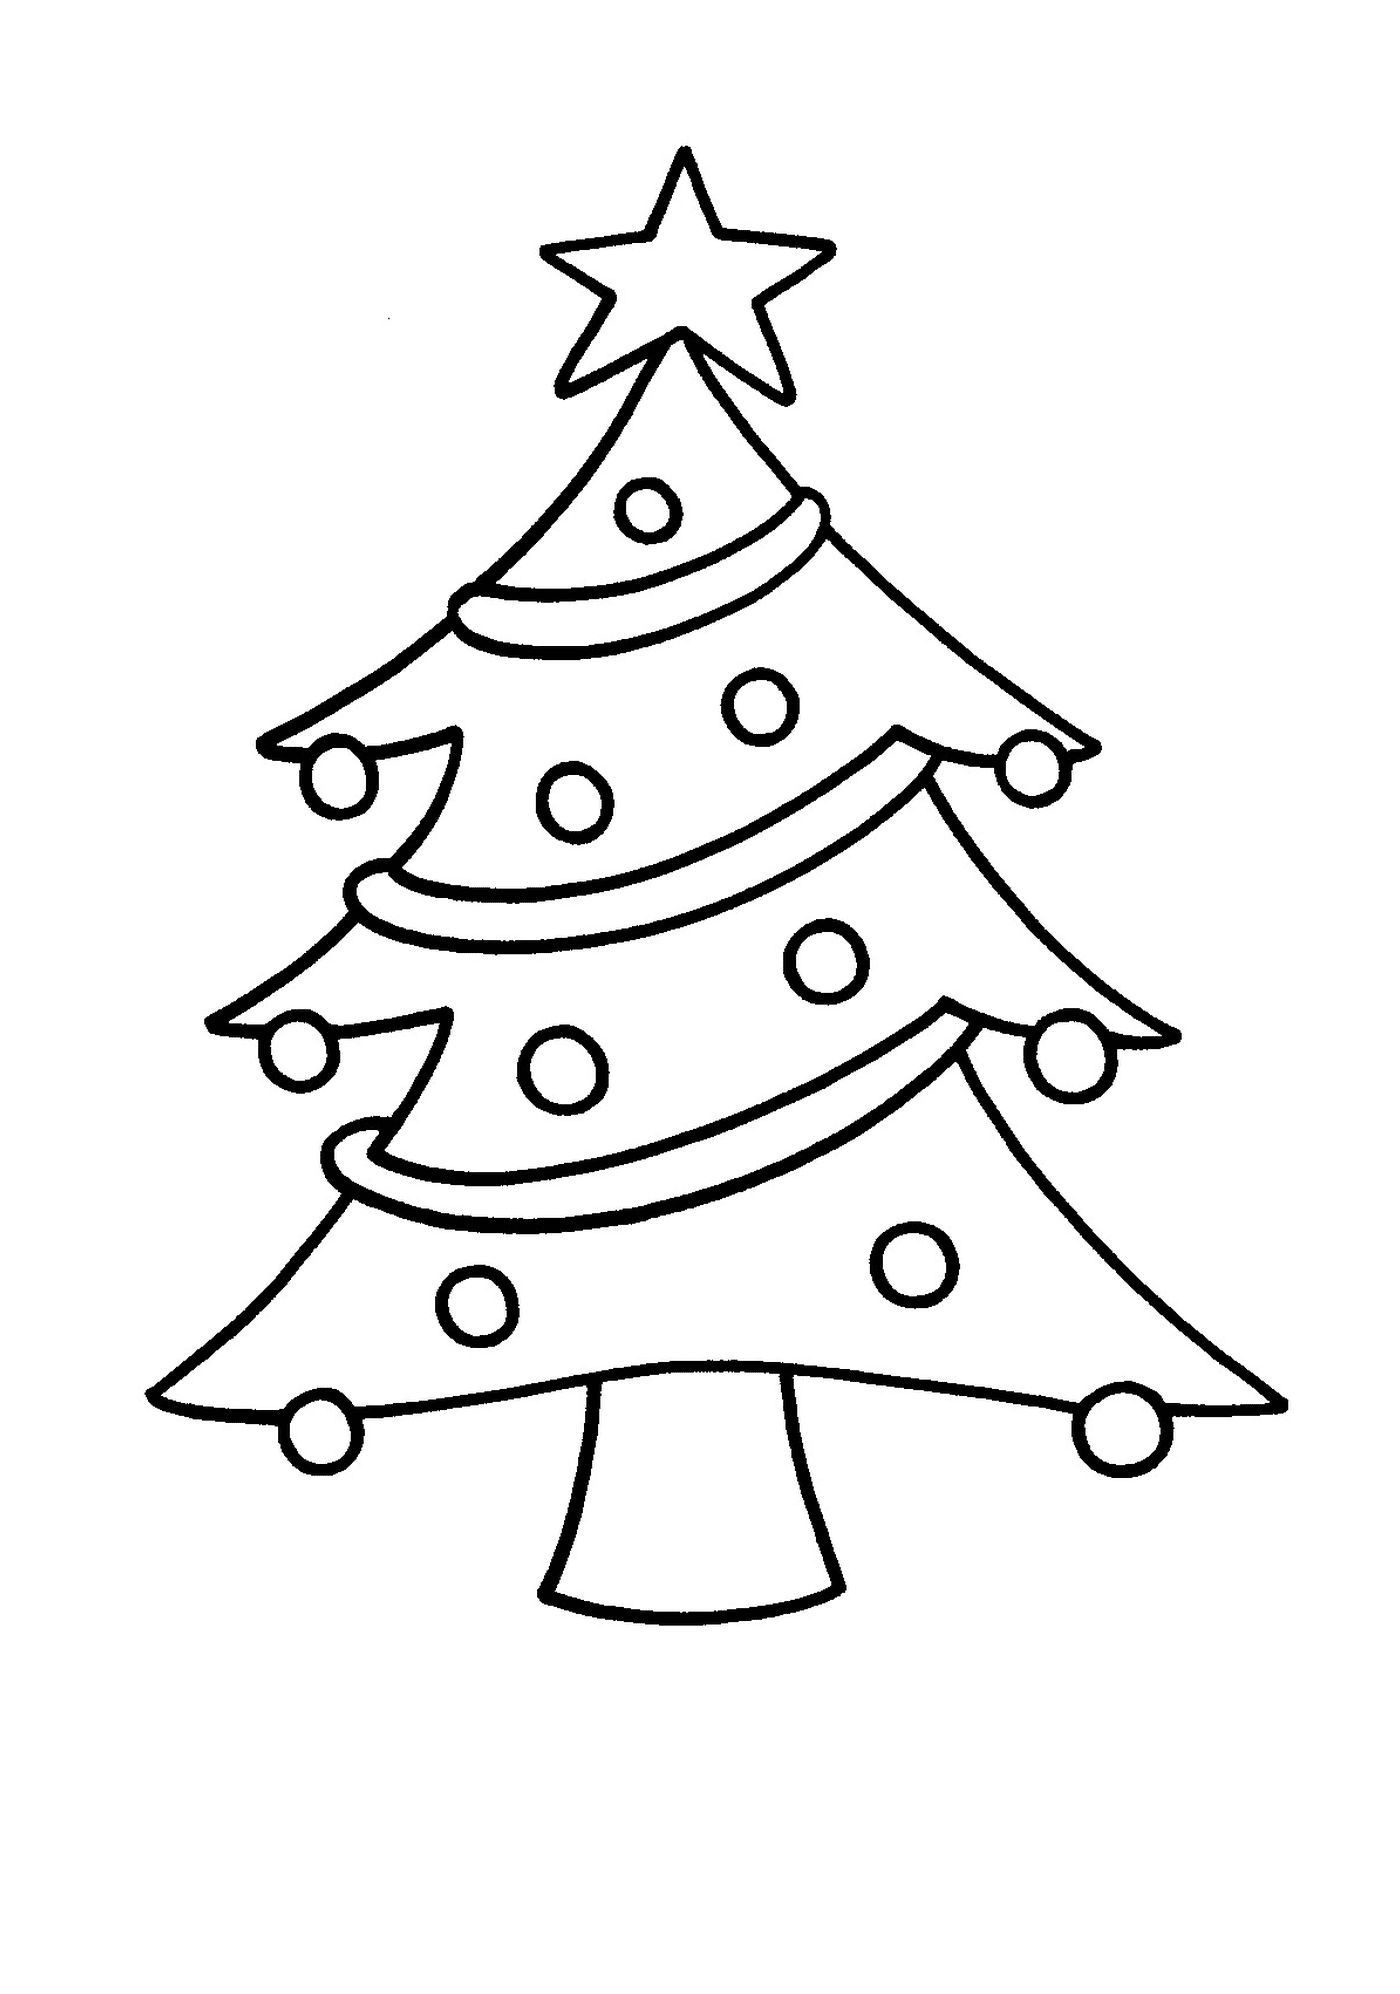  An easy Christmas tree for children 